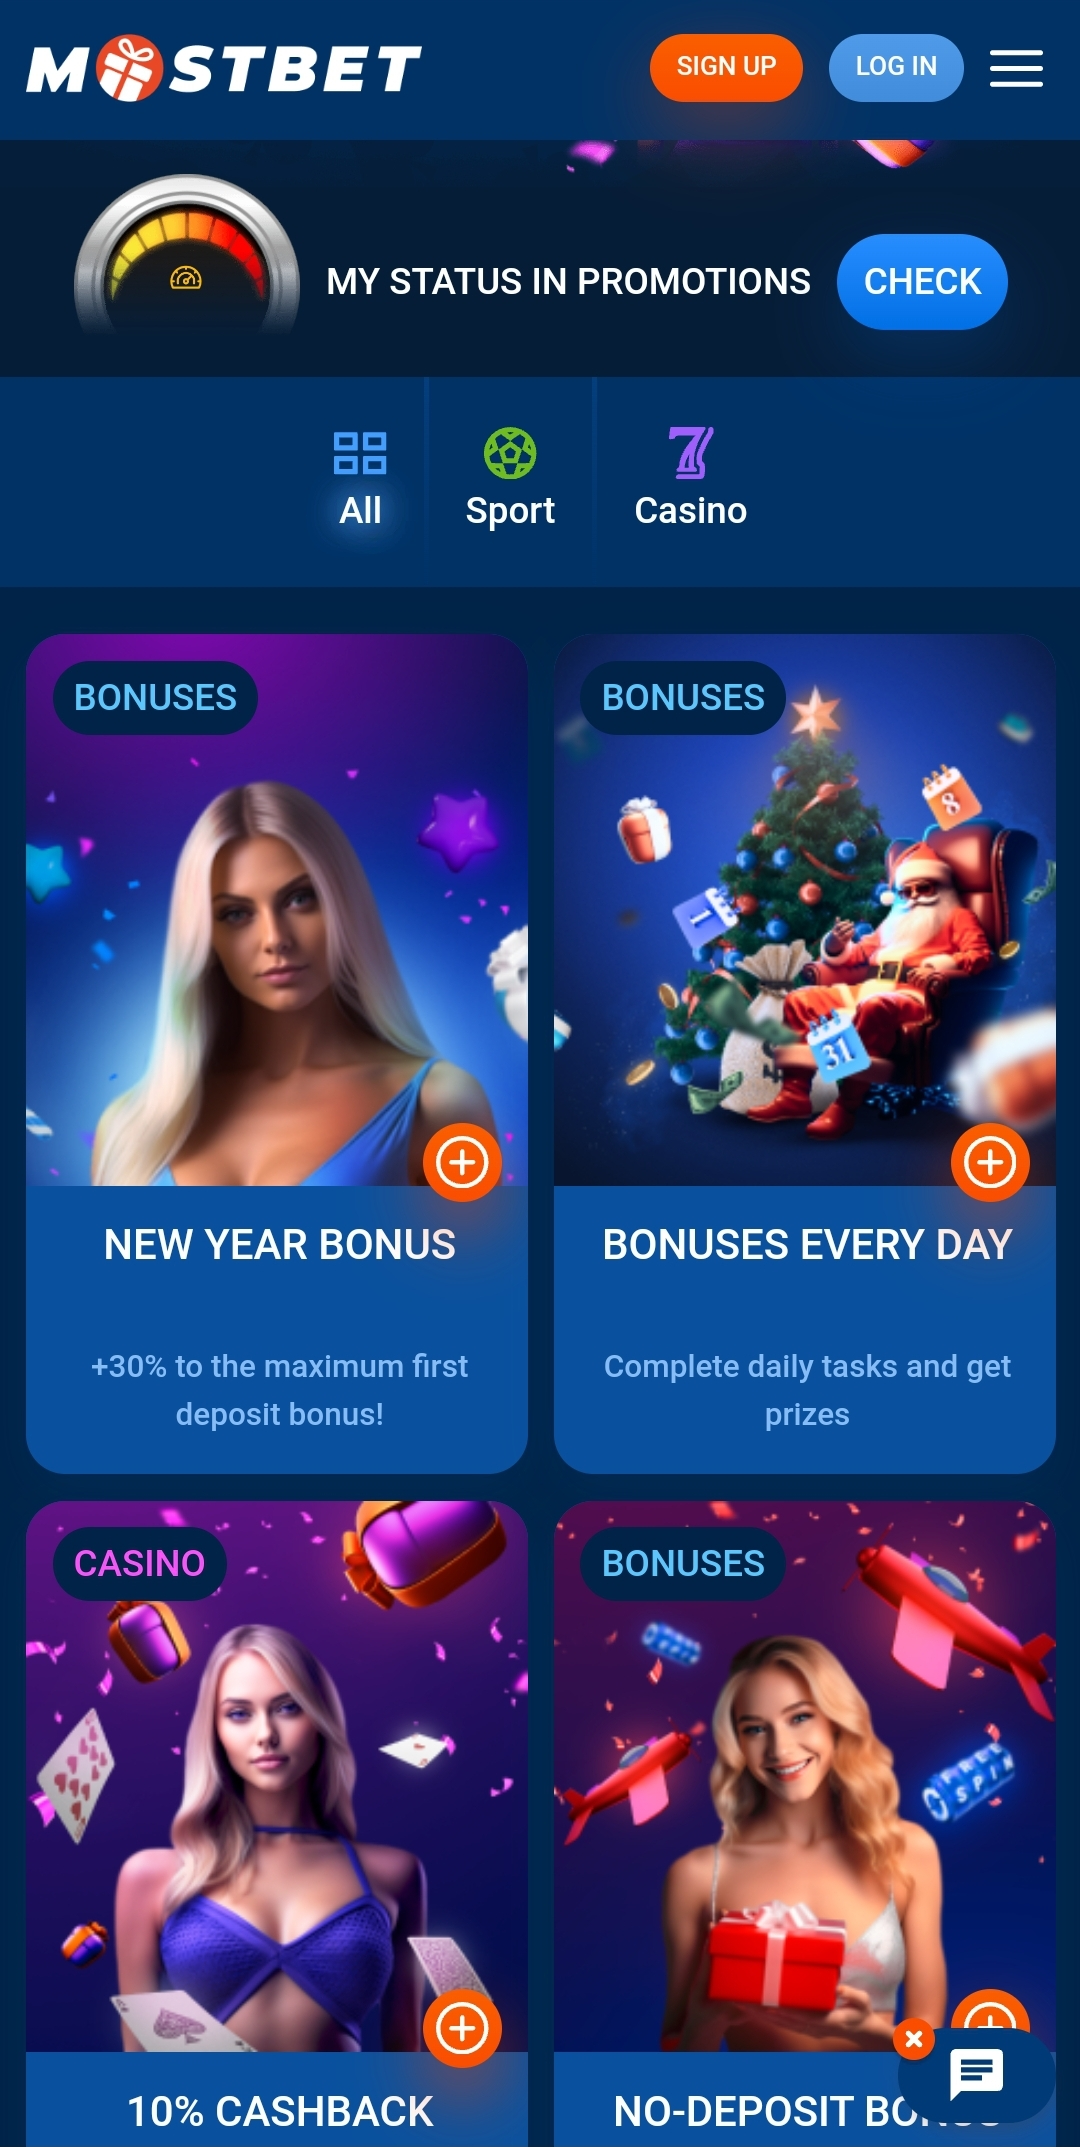 bonuses banners with description